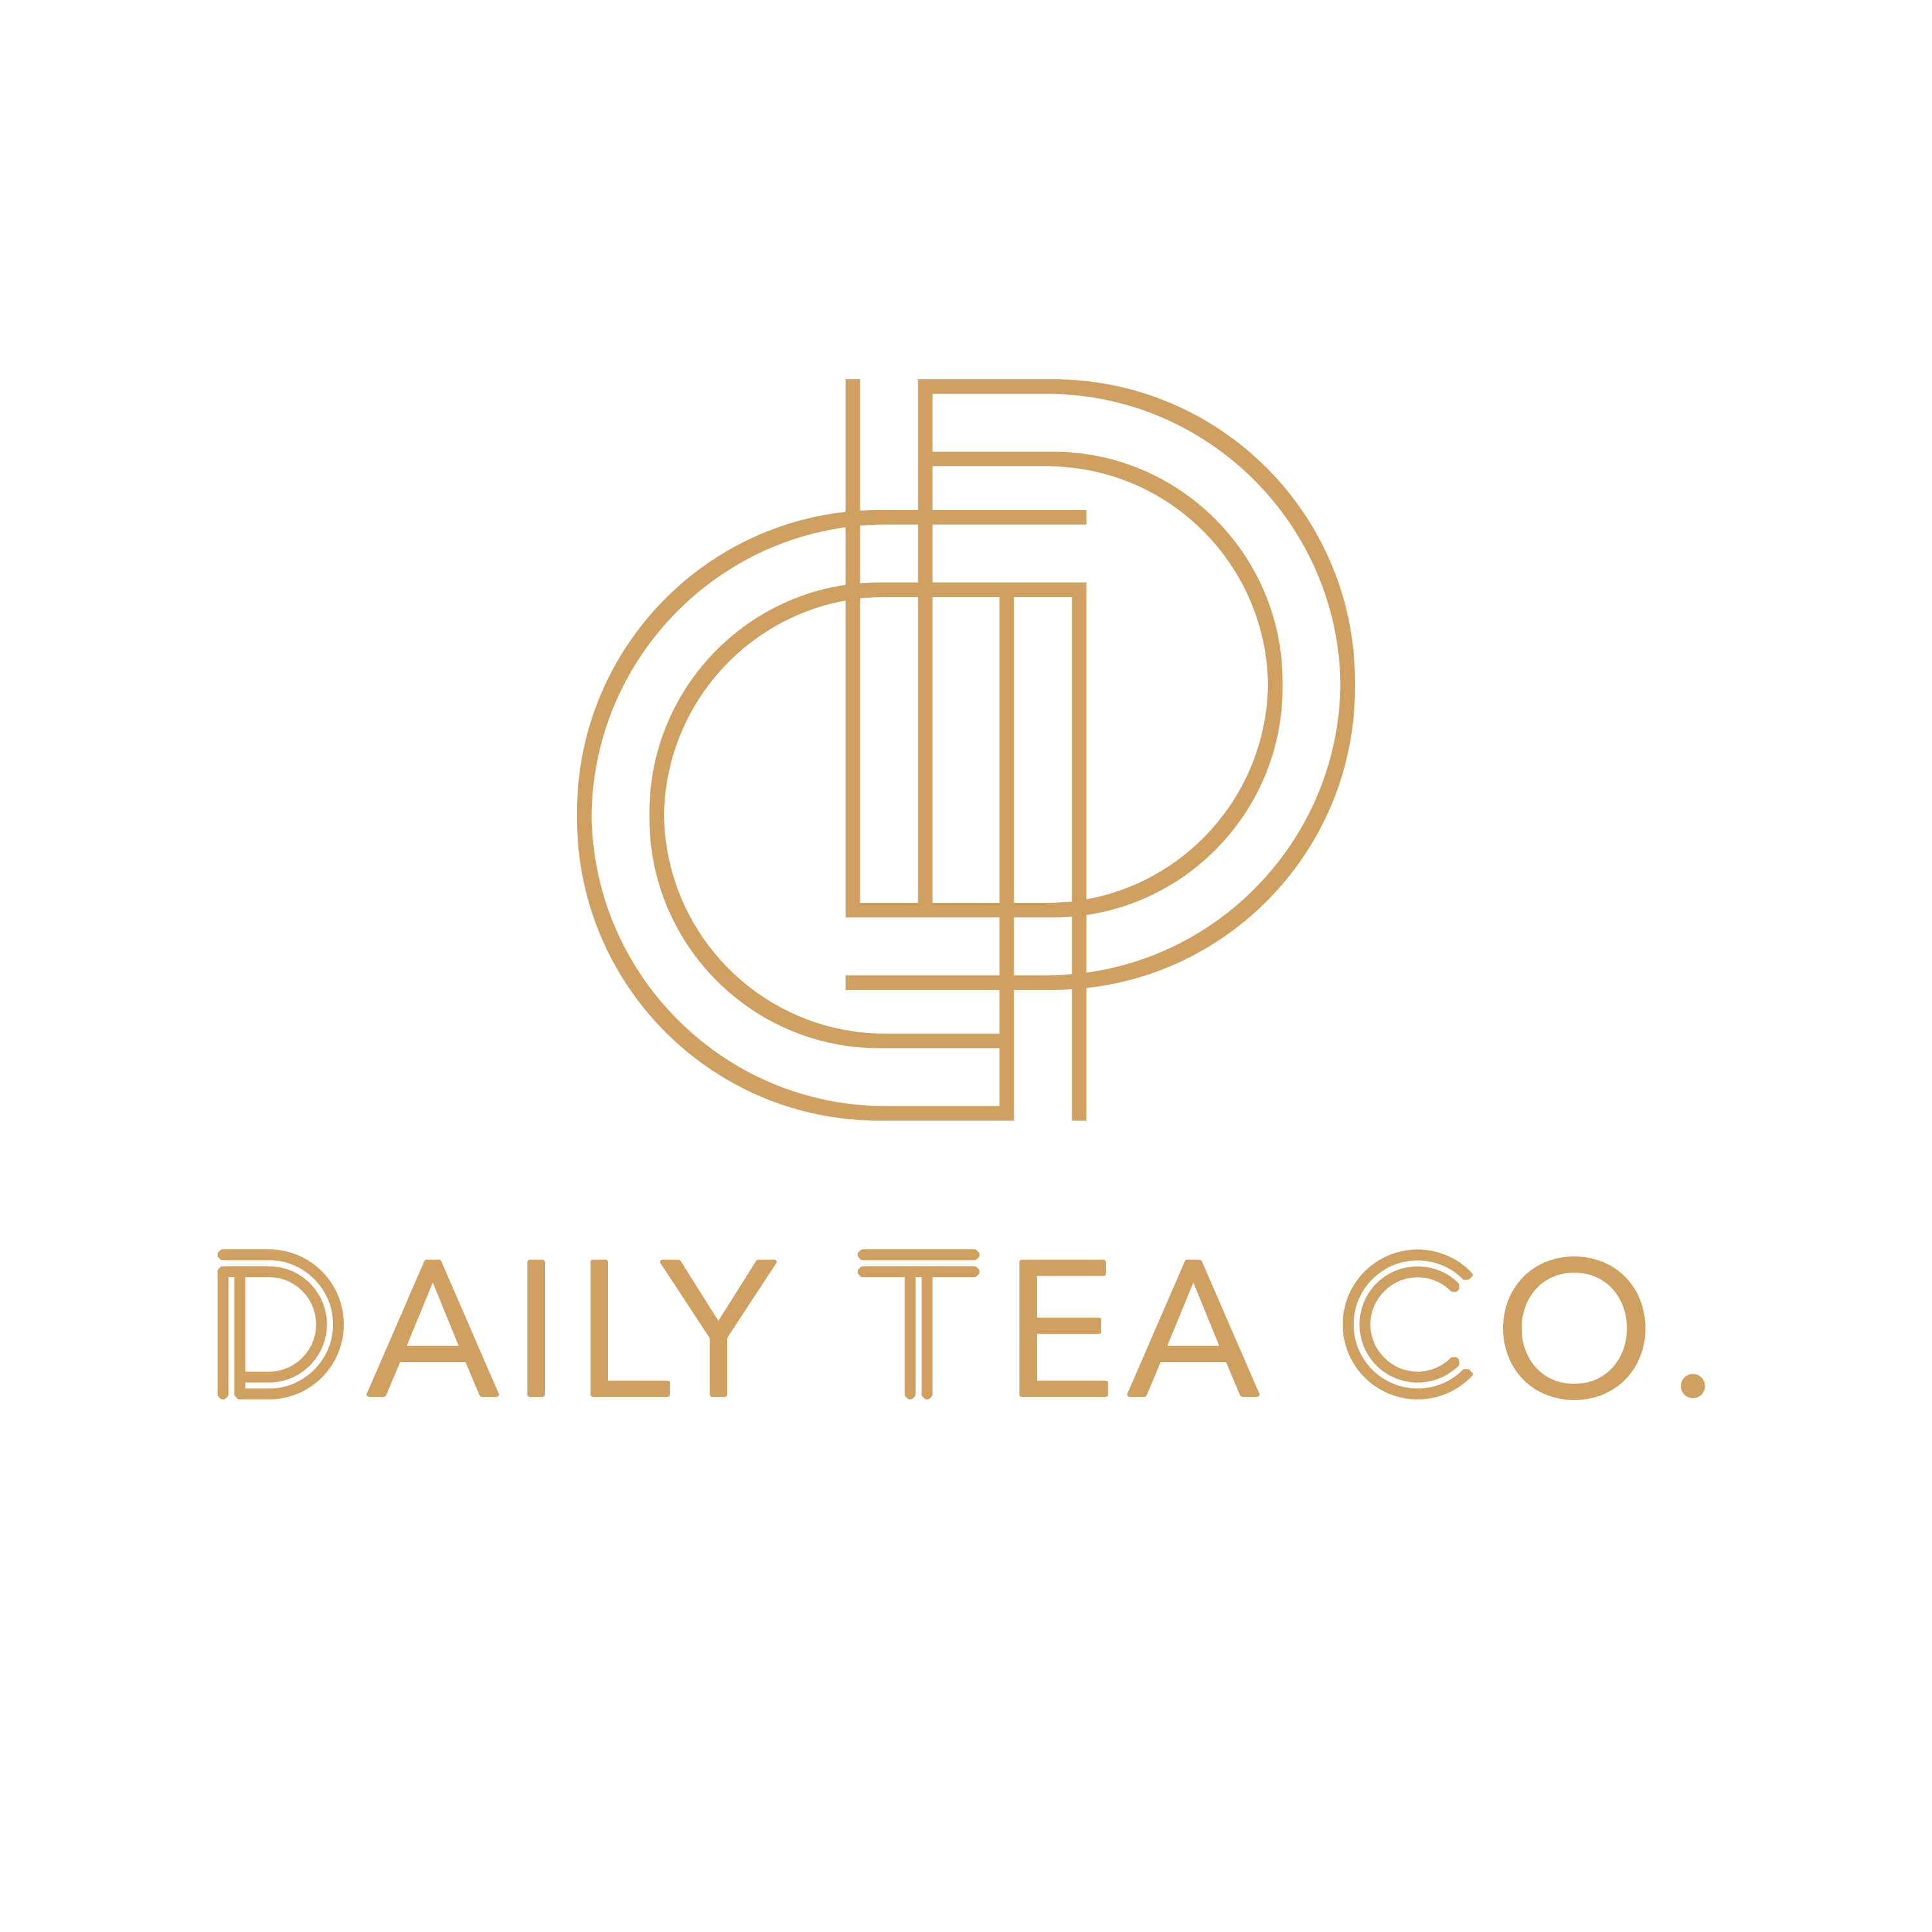 Daily Tea Co